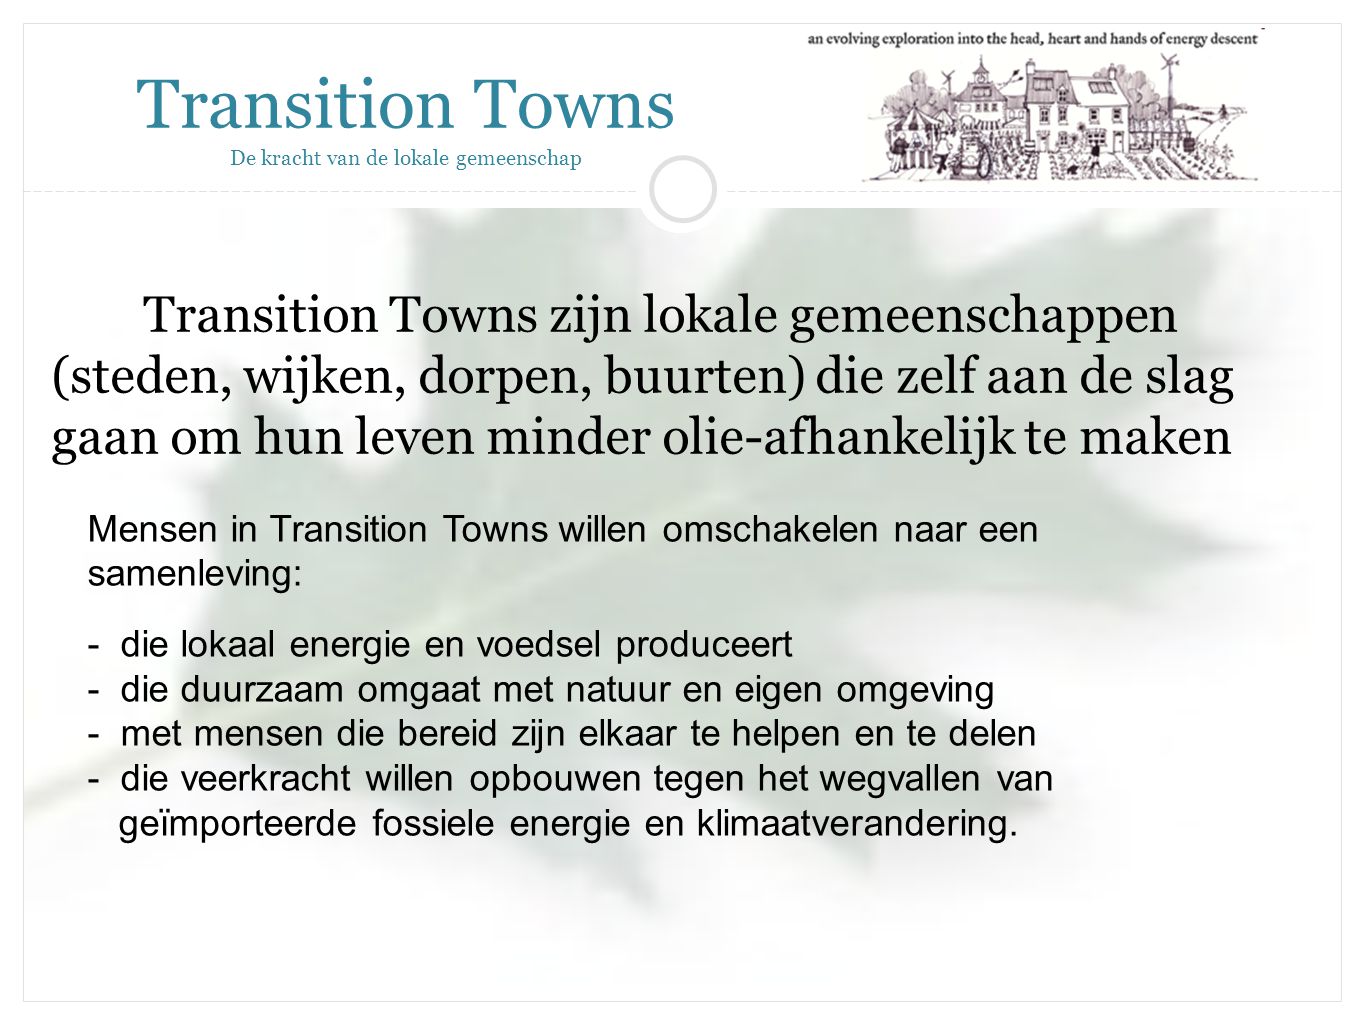 Transition Towns zijn lokale gemeenschappen (steden, wijken, dorpen, buurten) die zelf aan de slag gaan om hun leven minder olie-afhankelijk te maken Transition Towns De kracht van de lokale gemeenschap Mensen in Transition Towns willen omschakelen naar een samenleving: - die lokaal energie en voedsel produceert - die duurzaam omgaat met natuur en eigen omgeving - met mensen die bereid zijn elkaar te helpen en te delen - die veerkracht willen opbouwen tegen het wegvallen van geïmporteerde fossiele energie en klimaatverandering.